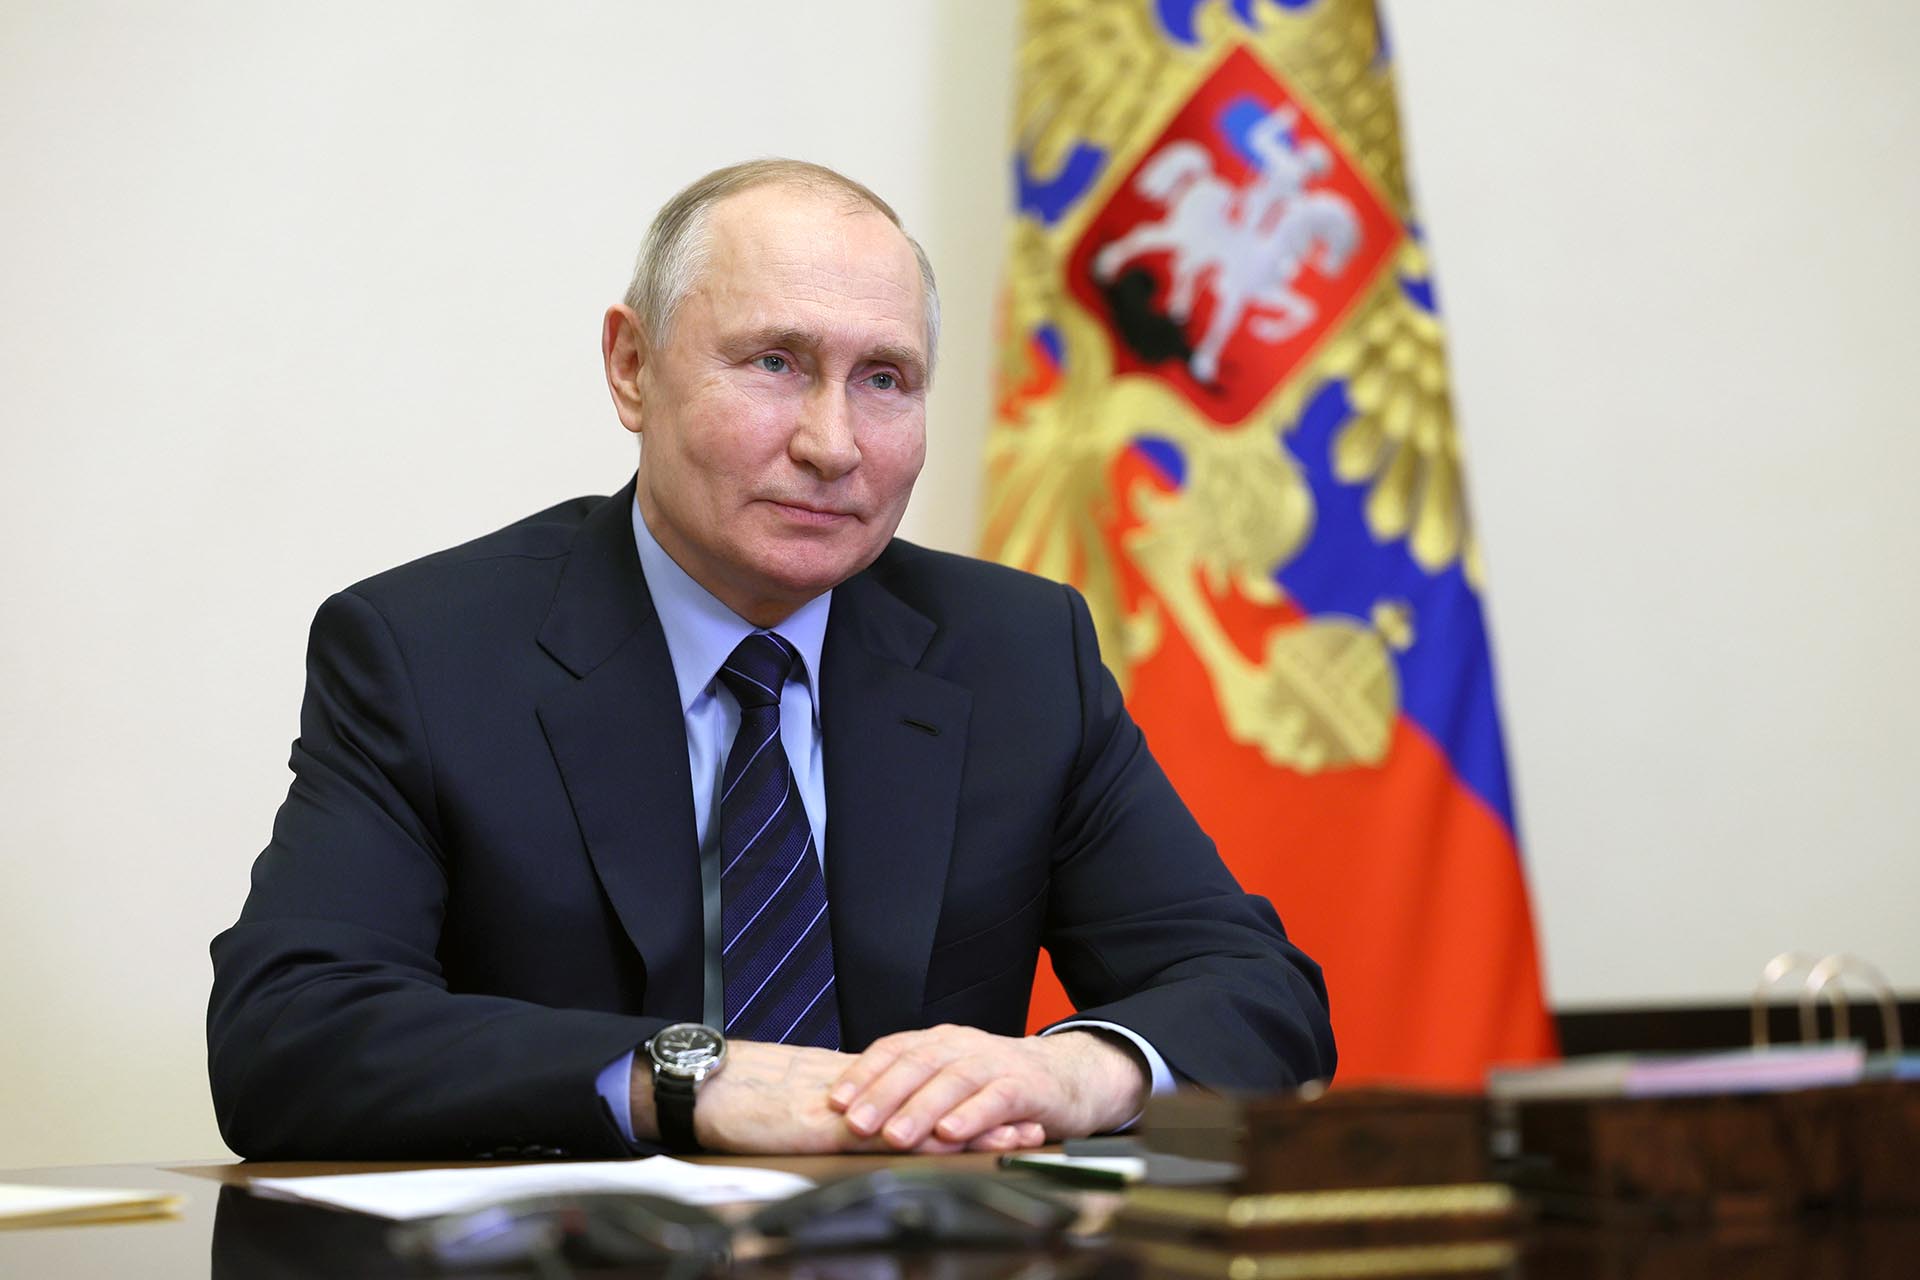 Владимир Путин: Обновленная Конституция РФ стабилизирует государство и помогает людям